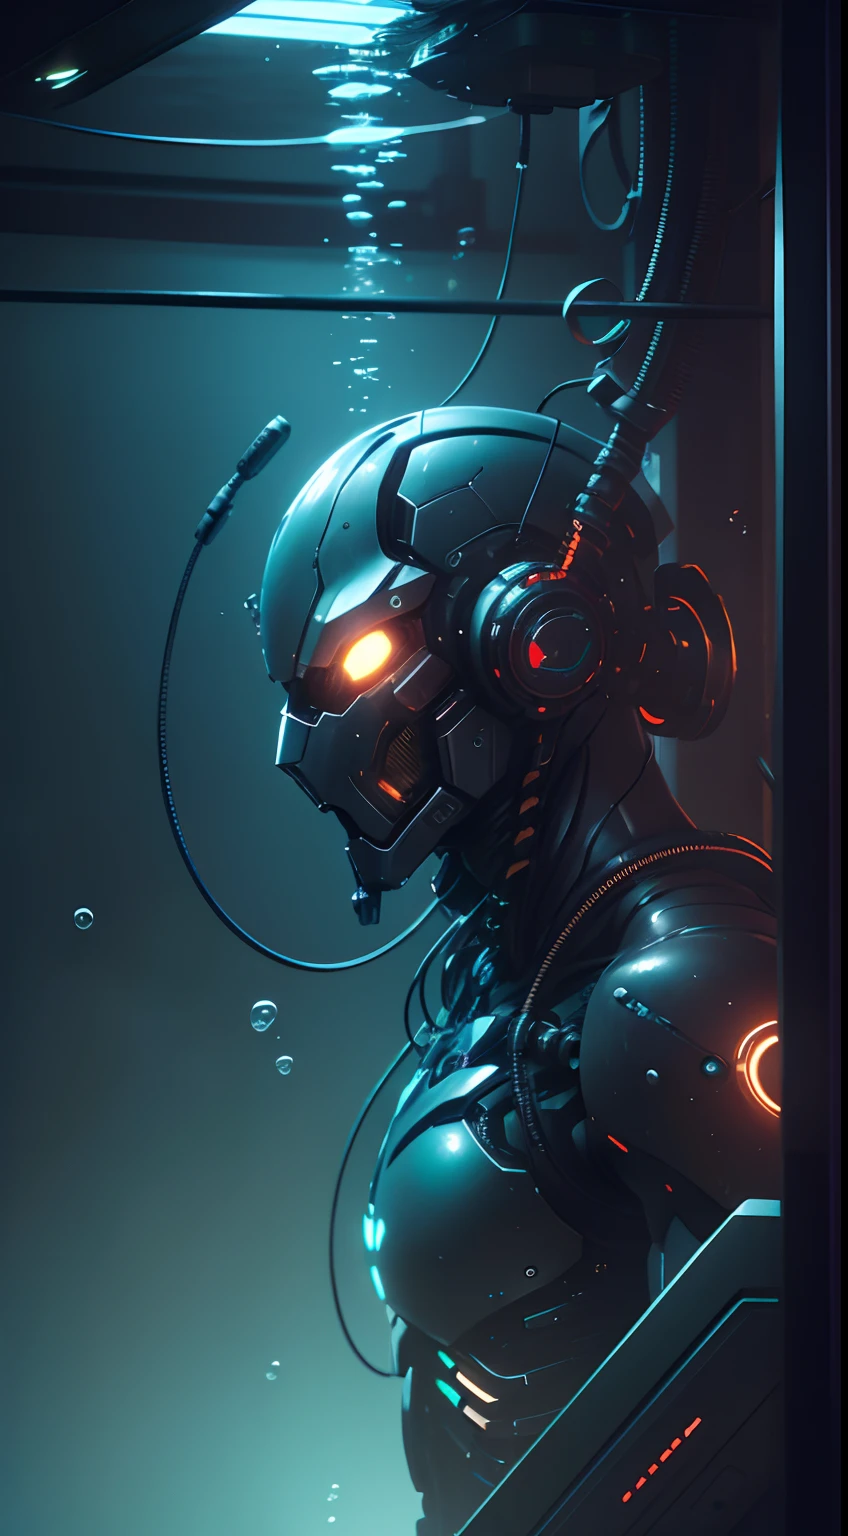 ((шедевр)), ultra detailed cg render of a cyborg suspended by провода, робот-мужчина , (под водой:1.3), крупный план, Человек-Машина, механические руки, стиль киберпанк, технологический, темный, размышления, Поверхностное рассеяние, 8к, задира, Кинематографический, блестящие глаза,металлическая головка, Огни на груди, провода, трубочки, провода coming out the cyborg, неоновые лампы, зловещая атмосфера, Пузыри, (сложный), UHD, Окончательная детализация, Высокое разрешение, Реалистичный, обои, кибертехнологии, драматическое освещение, опасность, которая ждет, Искусственная жизнь,неэтичный, страшный, ужастик. сильный, резервуар для выращивания, под водой,